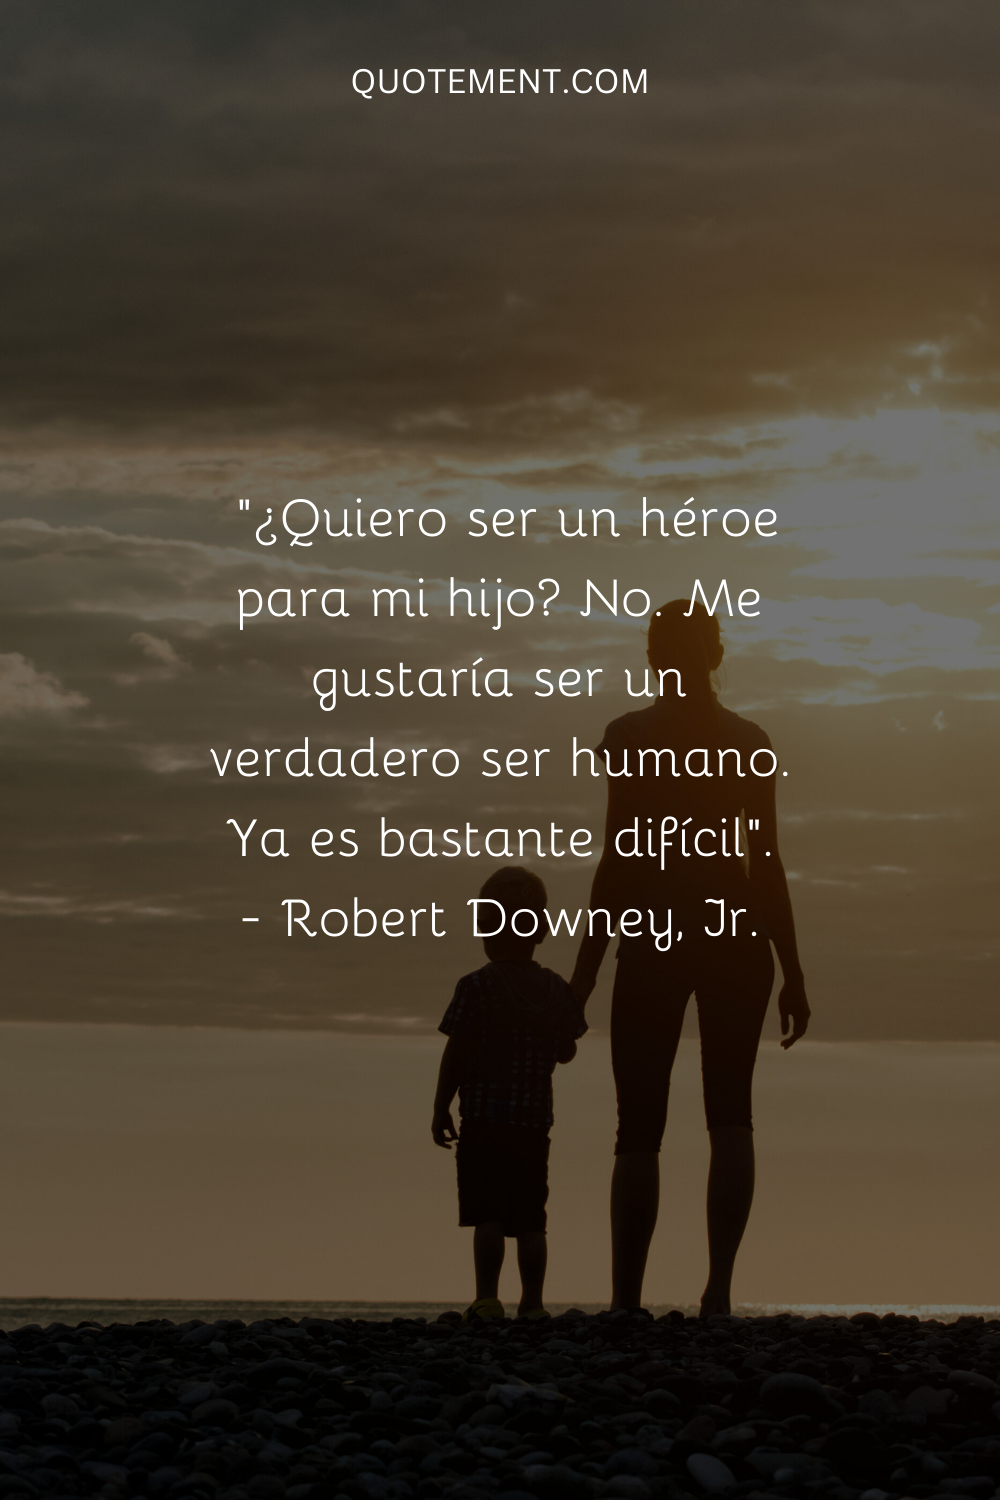 "¿Quiero ser un héroe para mi hijo? No. Me gustaría ser un ser humano muy real. Eso ya es bastante difícil". - Robert Downey, Jr.